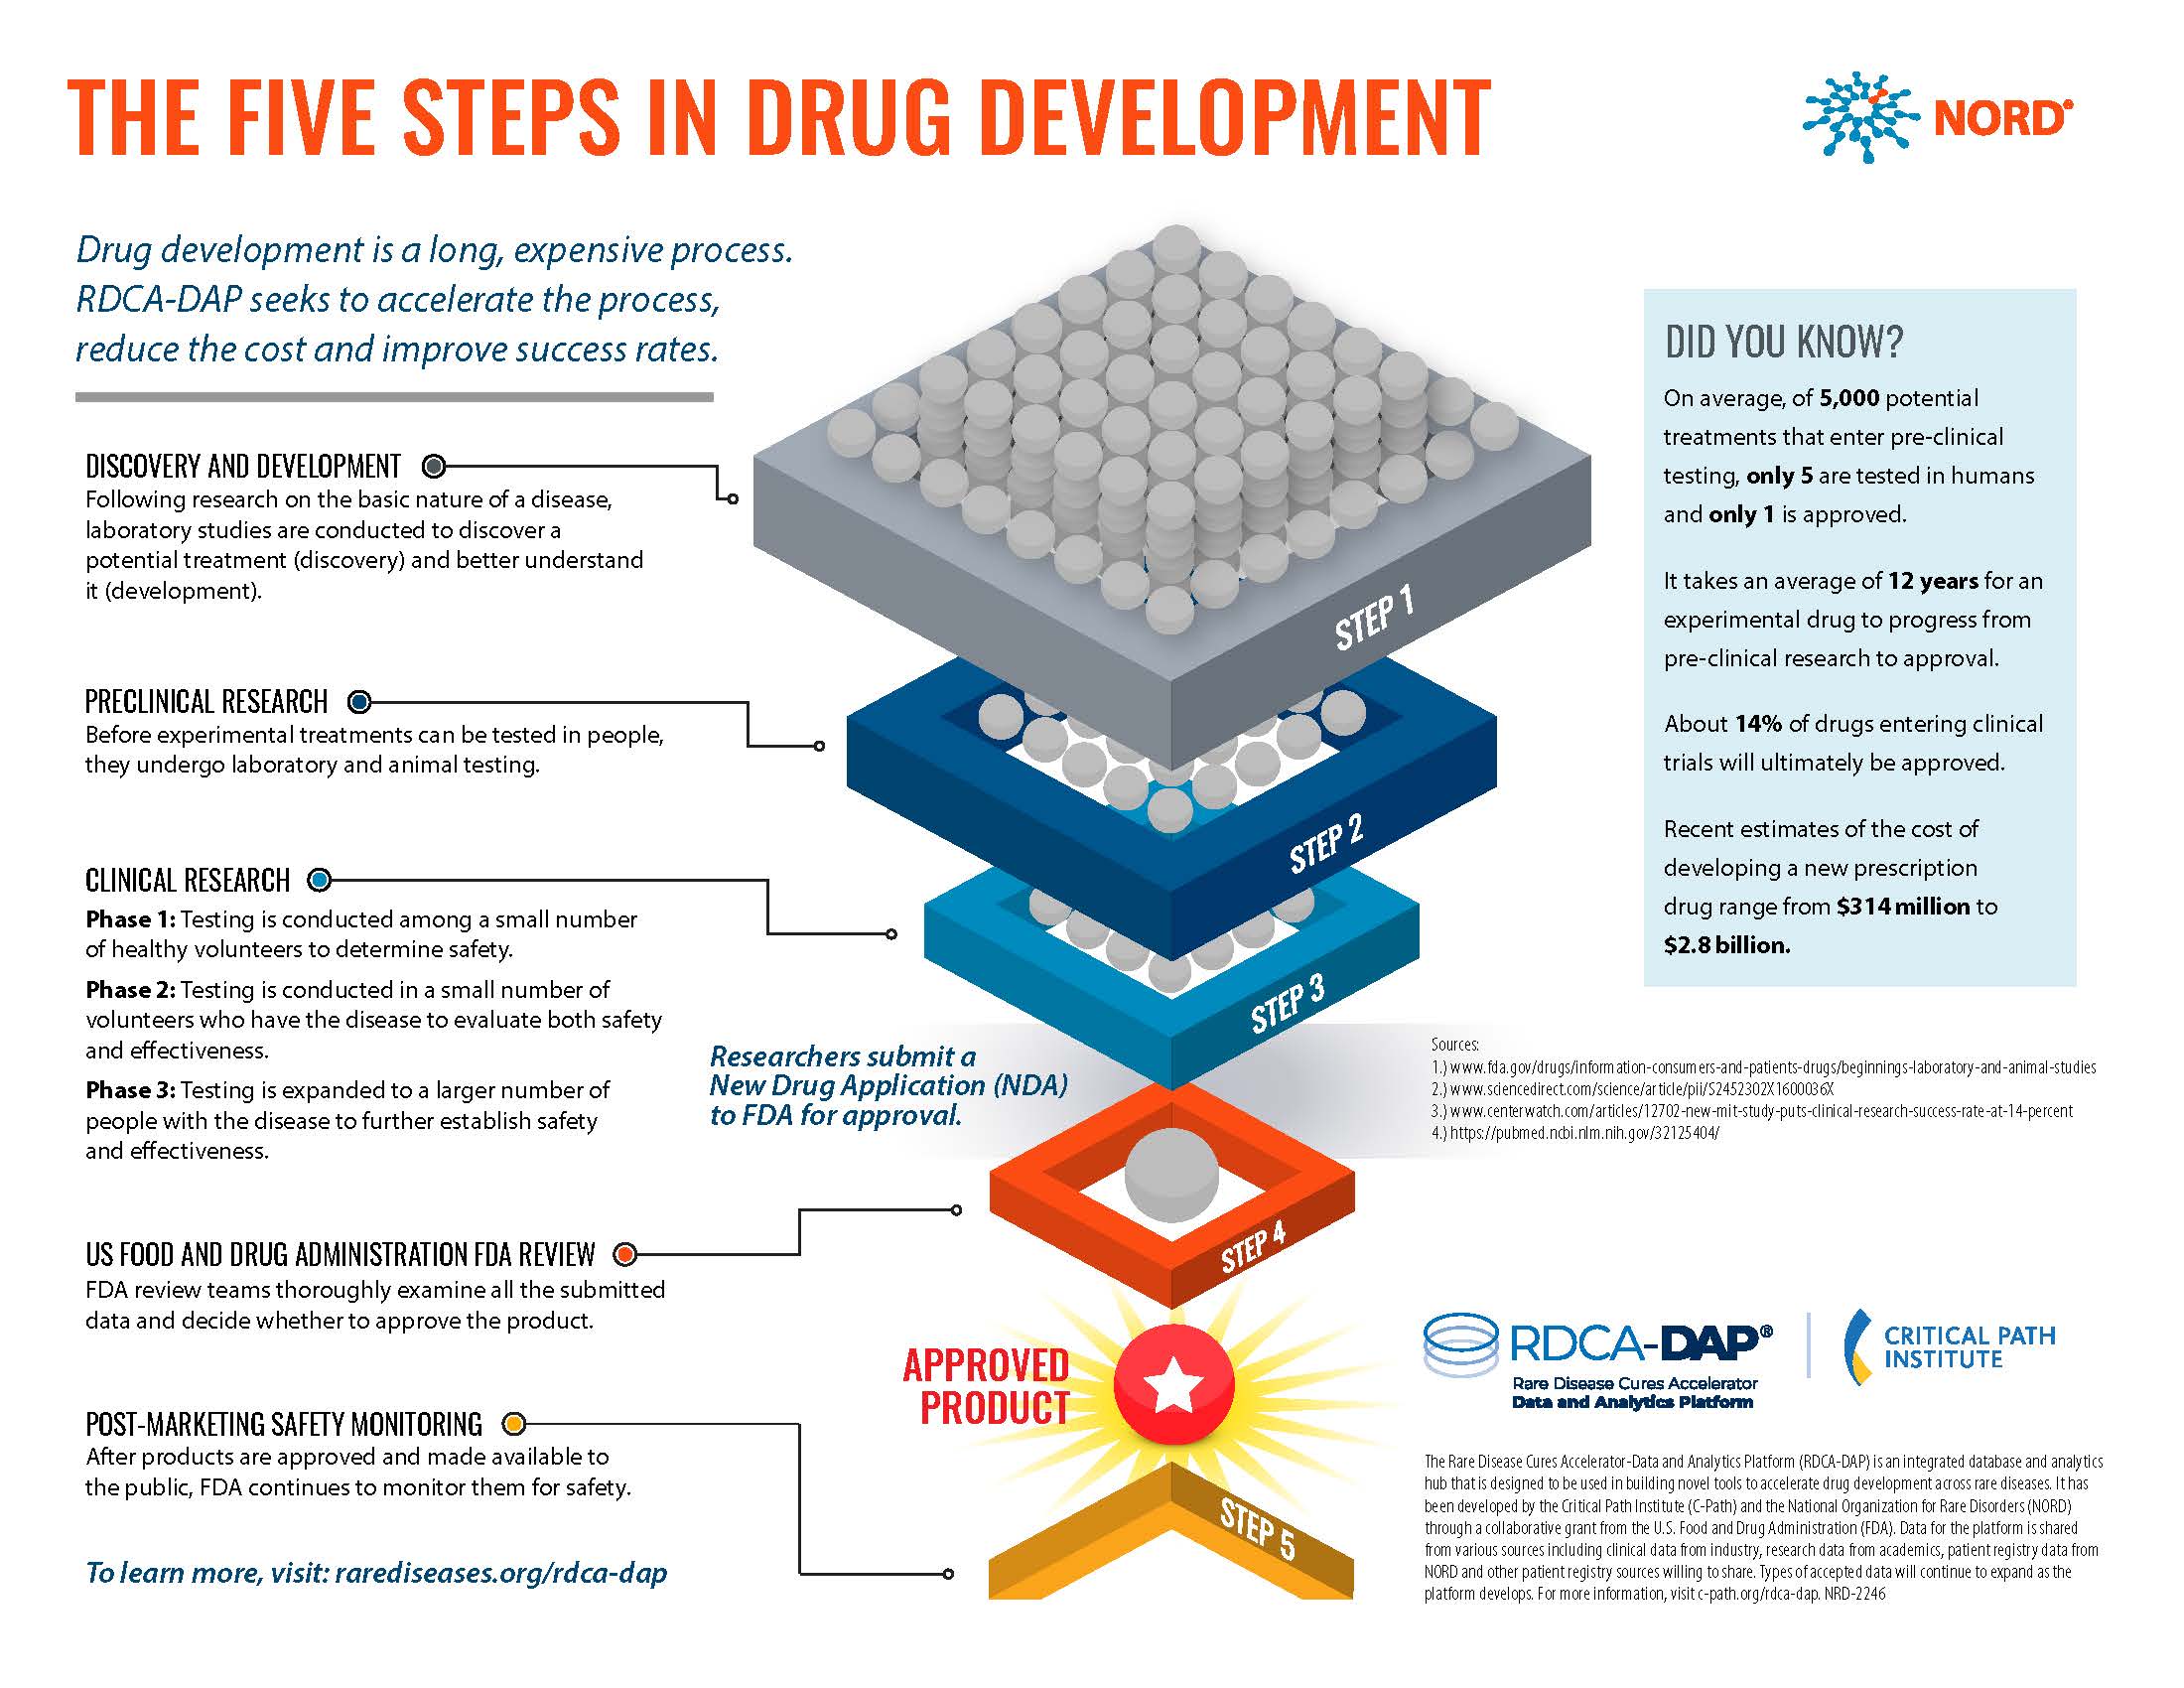 Illustration of the five steps in drug development